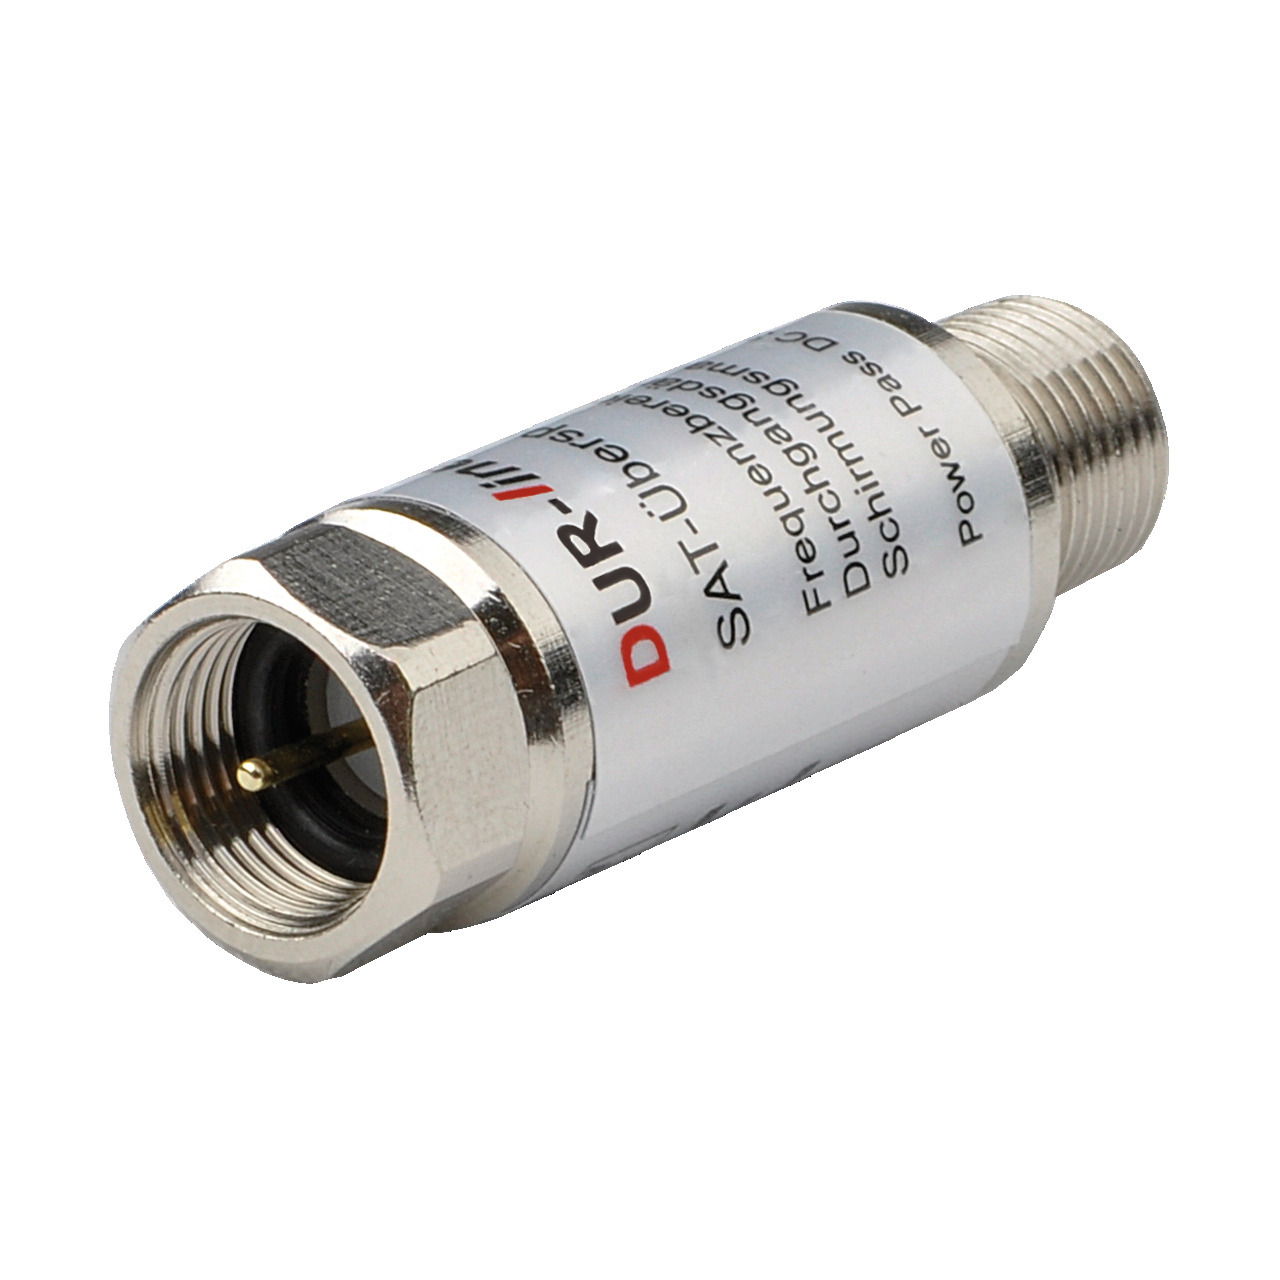 DUR-line berspannungs-Blitzschutz DLBS 3001- 0-3 dB Durchgangsdmpfung- passend zu Erdungsblcken